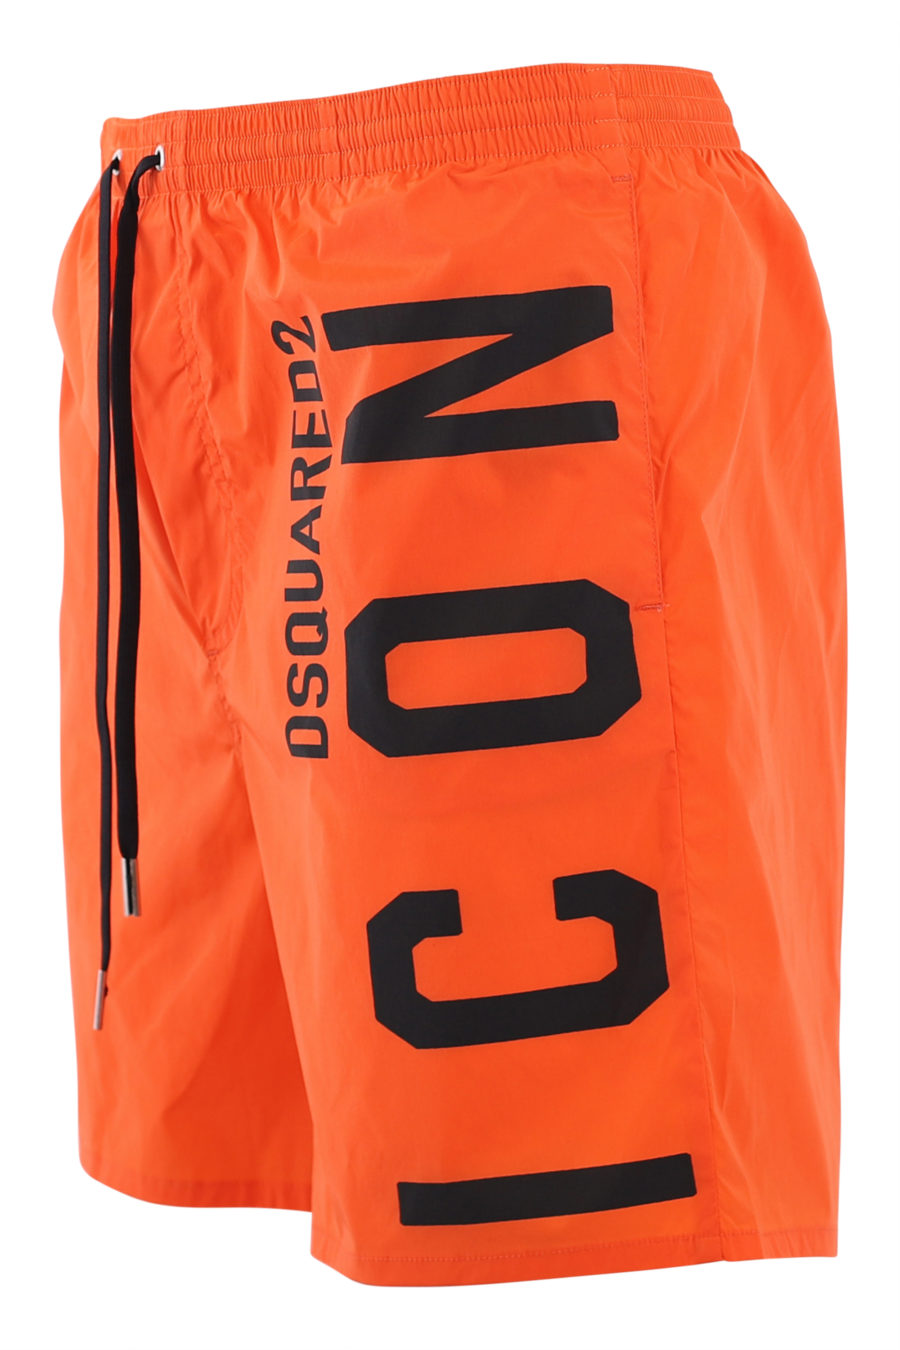 Bañador naranja con logo "icon" negro lateral - IMG 6911